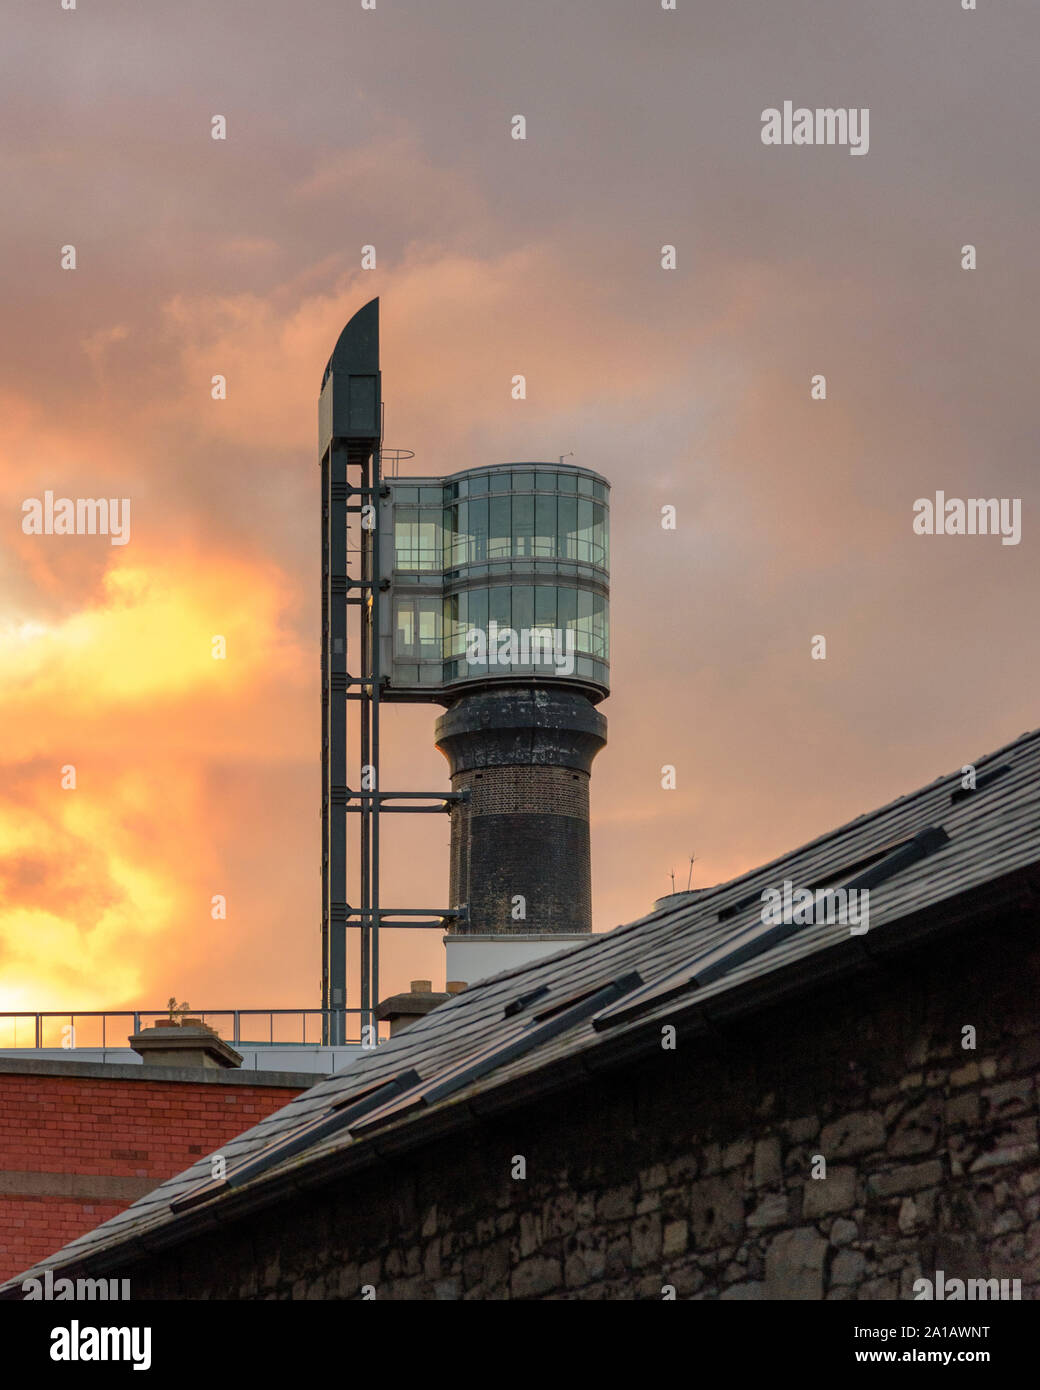 Die Smithfield Schornstein Aussichtsturm spät in den Tag mit einem dramatischen Himmel in Dublin, Irland Stockfoto